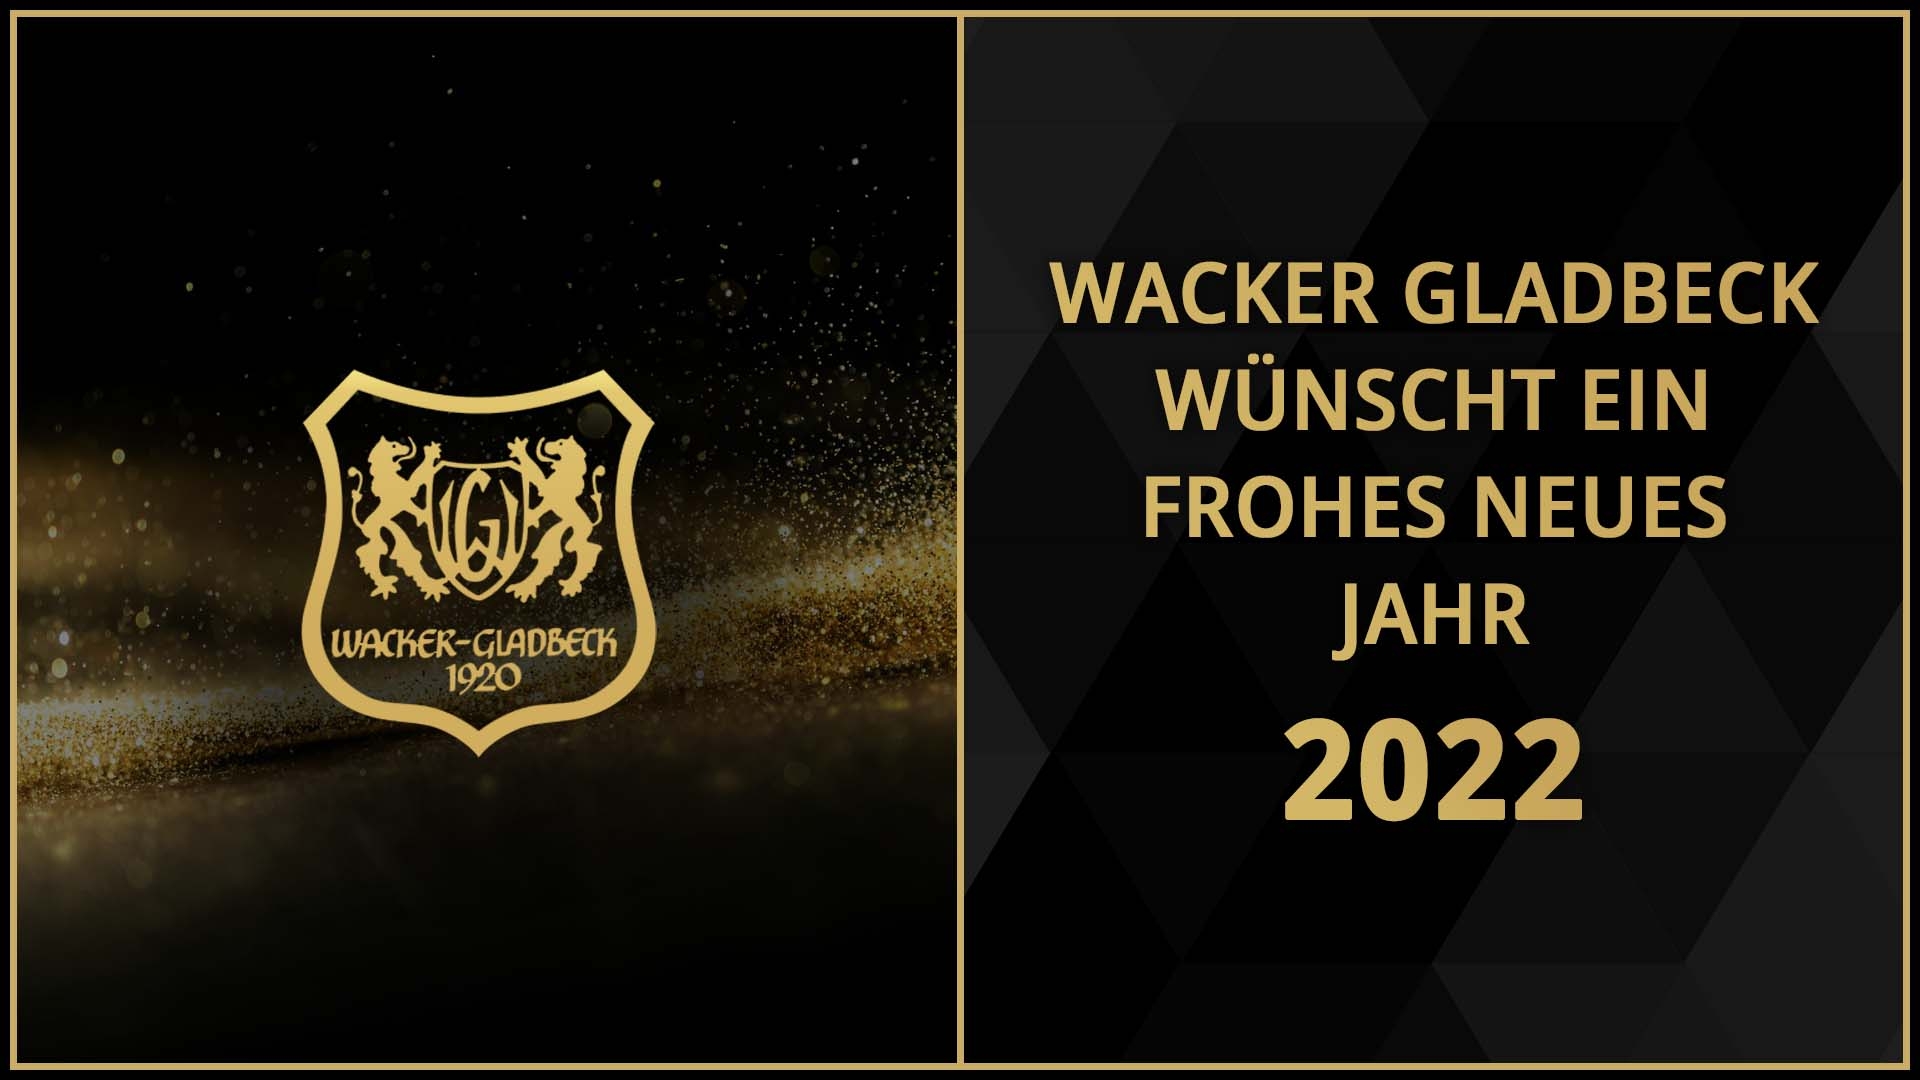 Wacker Gladbeck wünscht ein frohes neues Jahr 2022 - Wacker Gladbeck